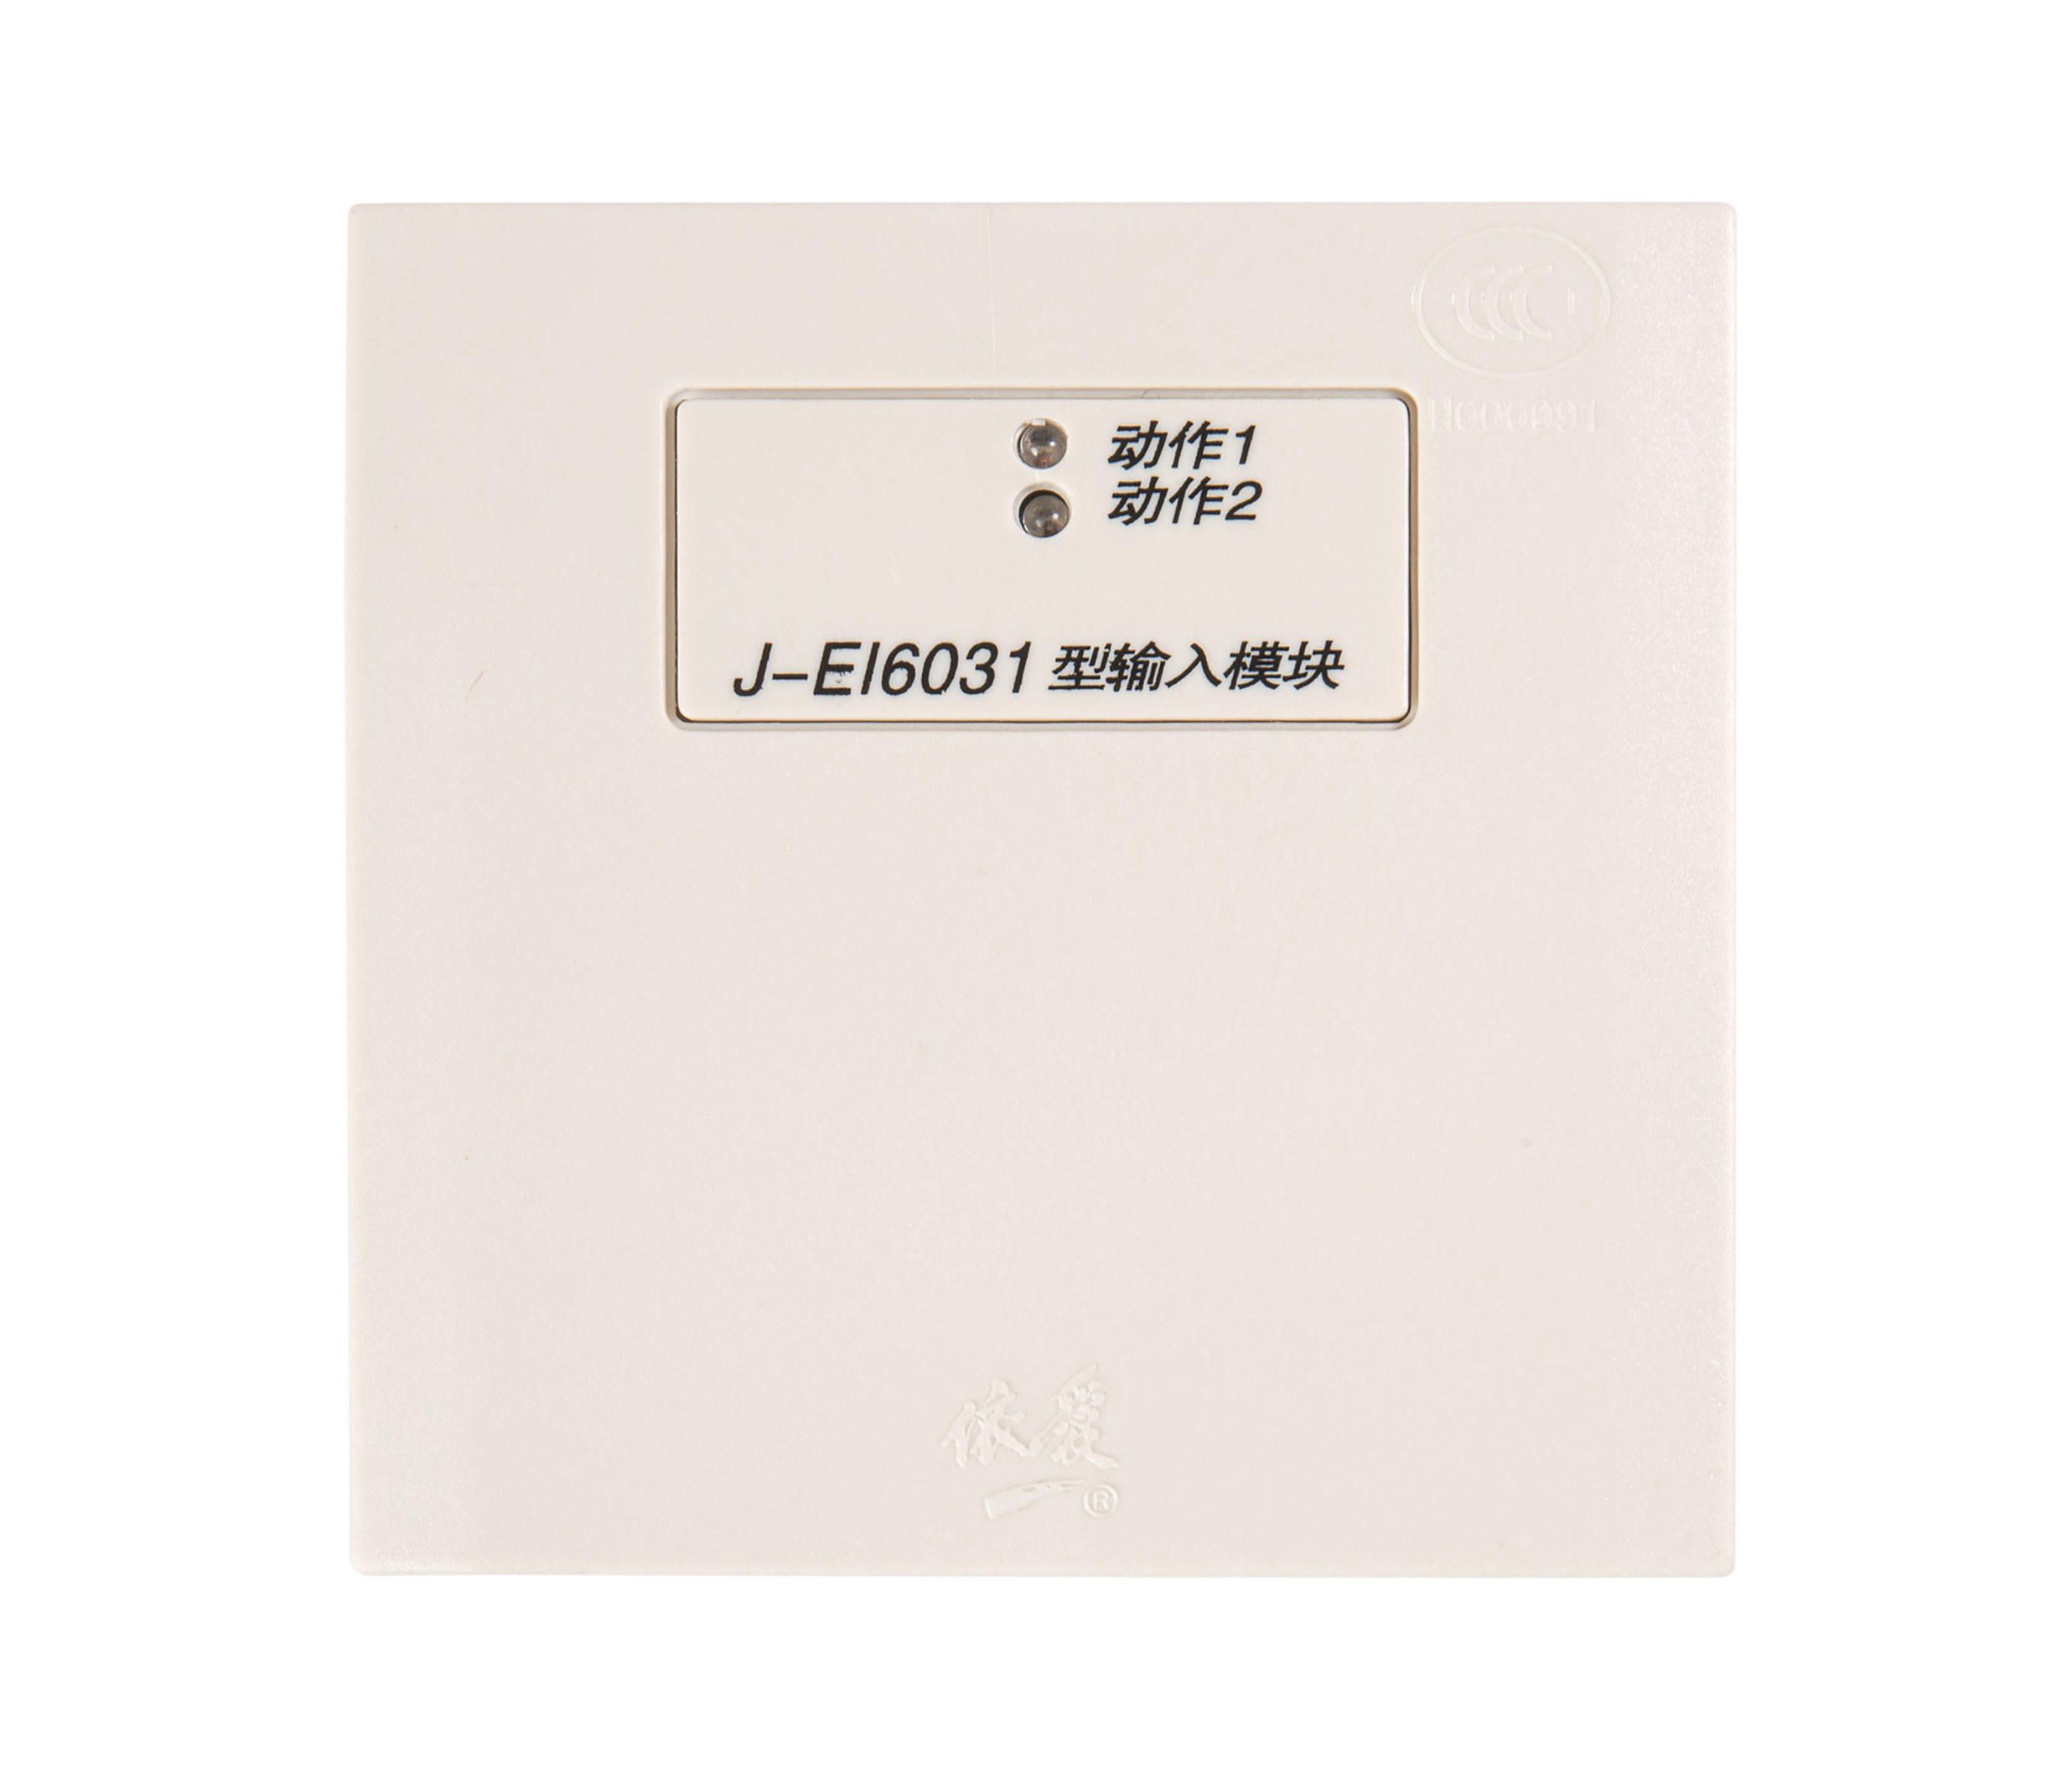 J-EI6031輸入模塊